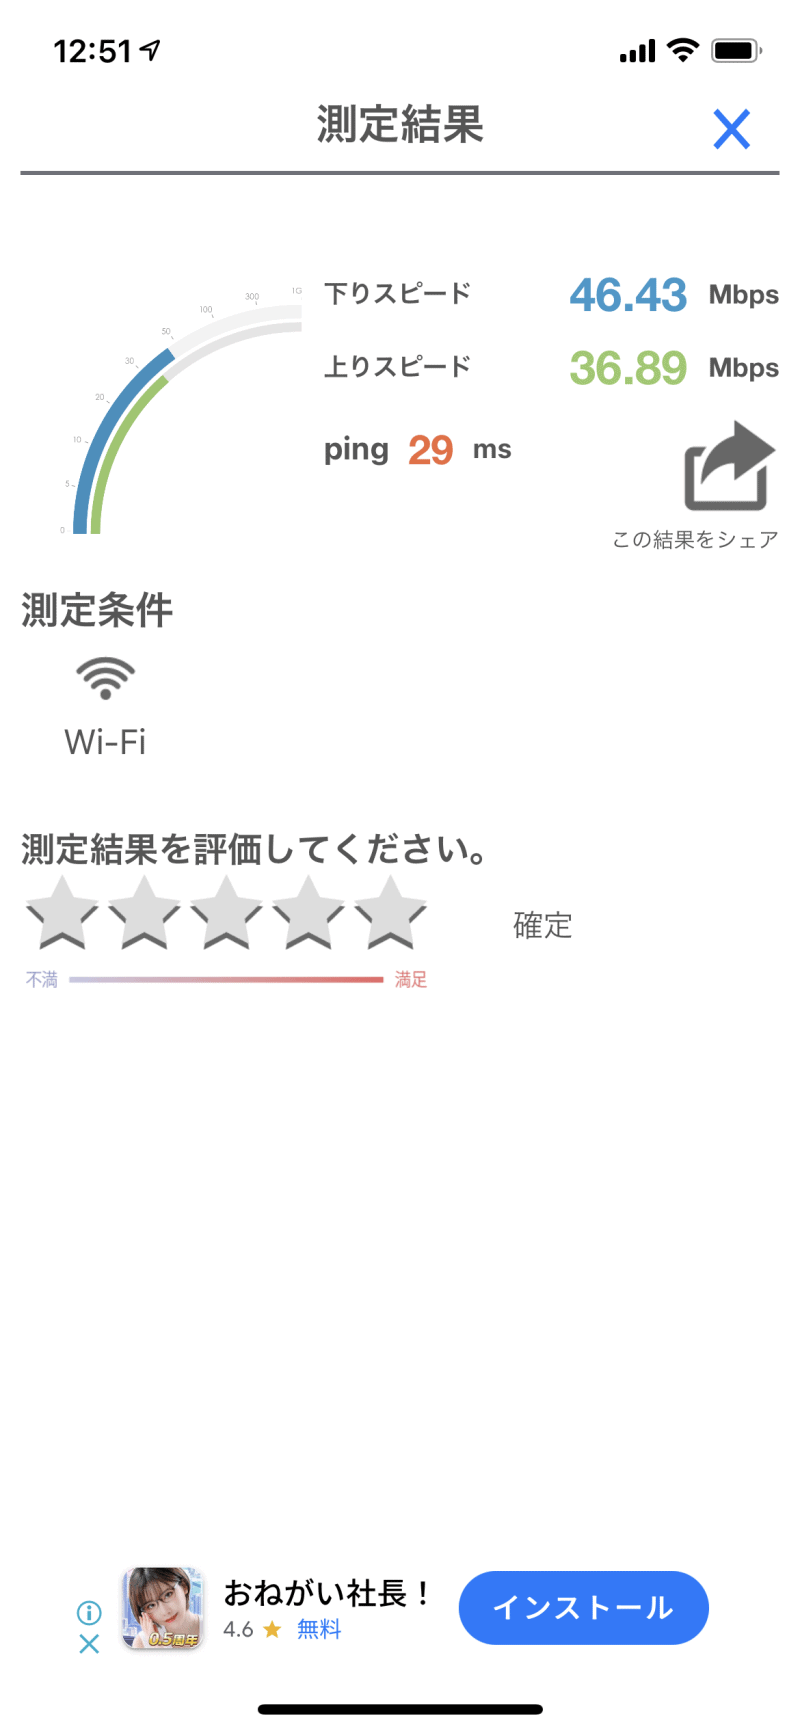 AiR-WiFiのU2sの速度